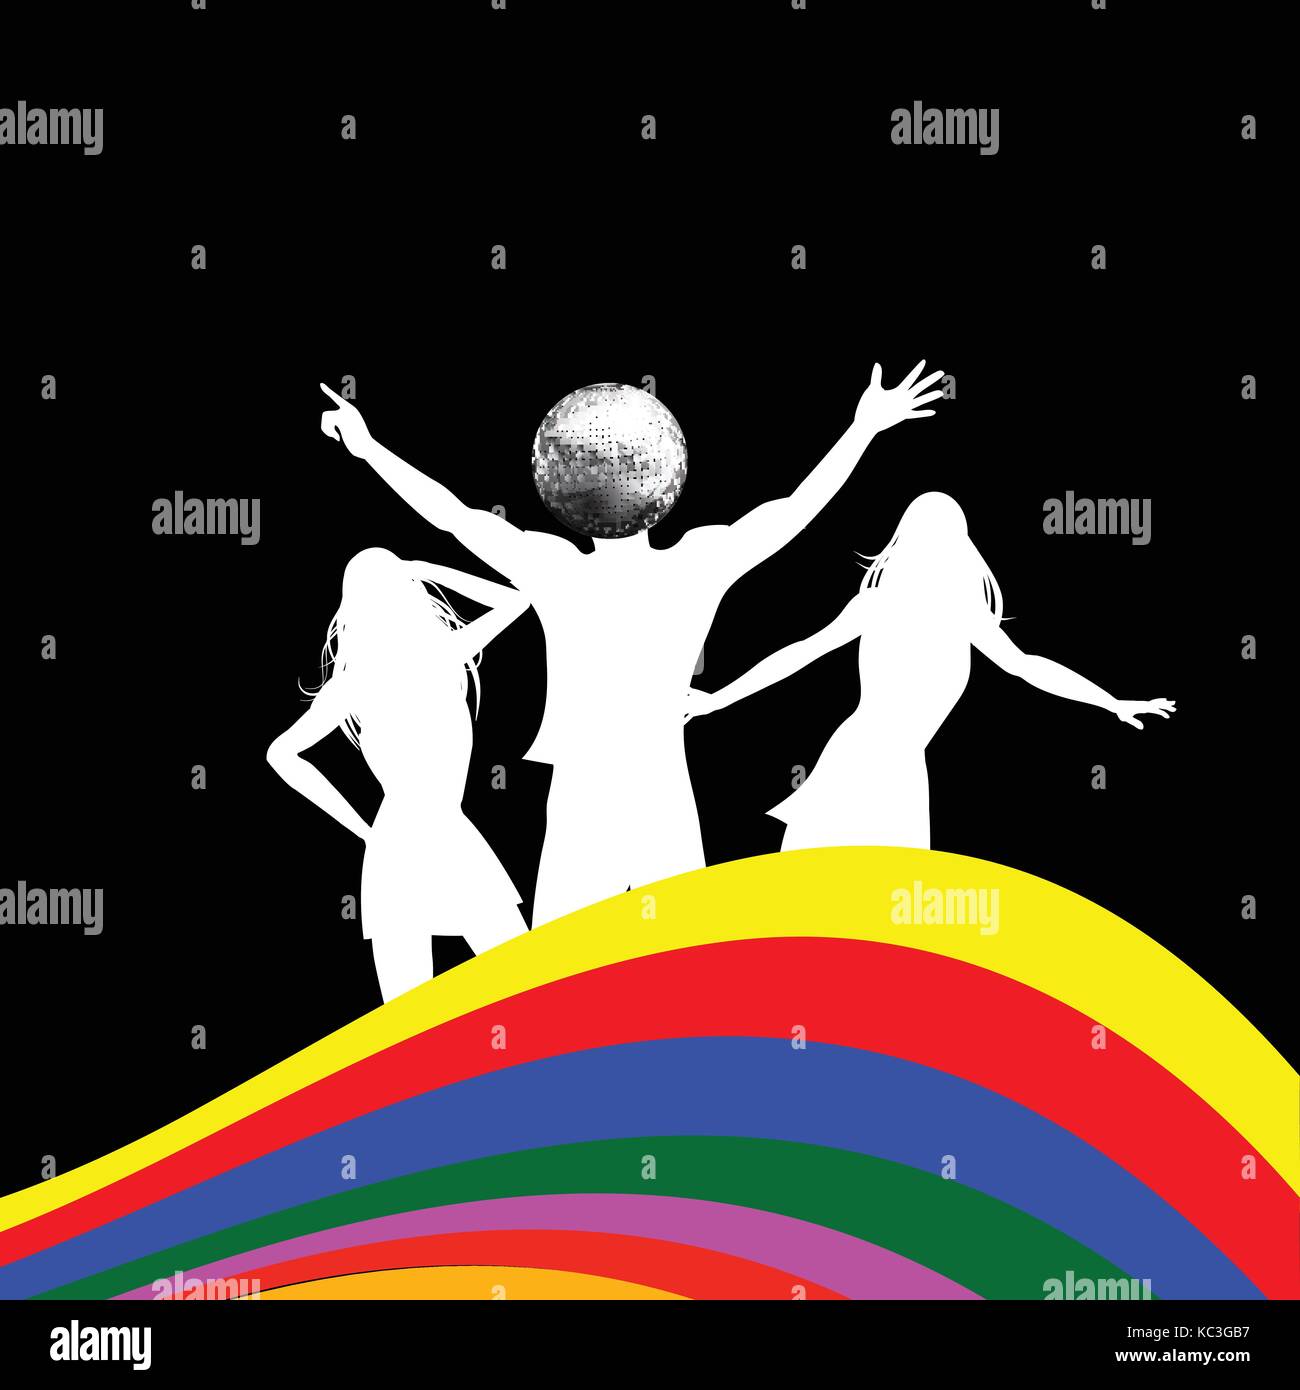 Tanzende weisse Silhouetten zwei weibliche und ein männlicher mit Disco ball Kopf über schwarzen Hintergrund mit mehrfarbigen Wave Stock Vektor